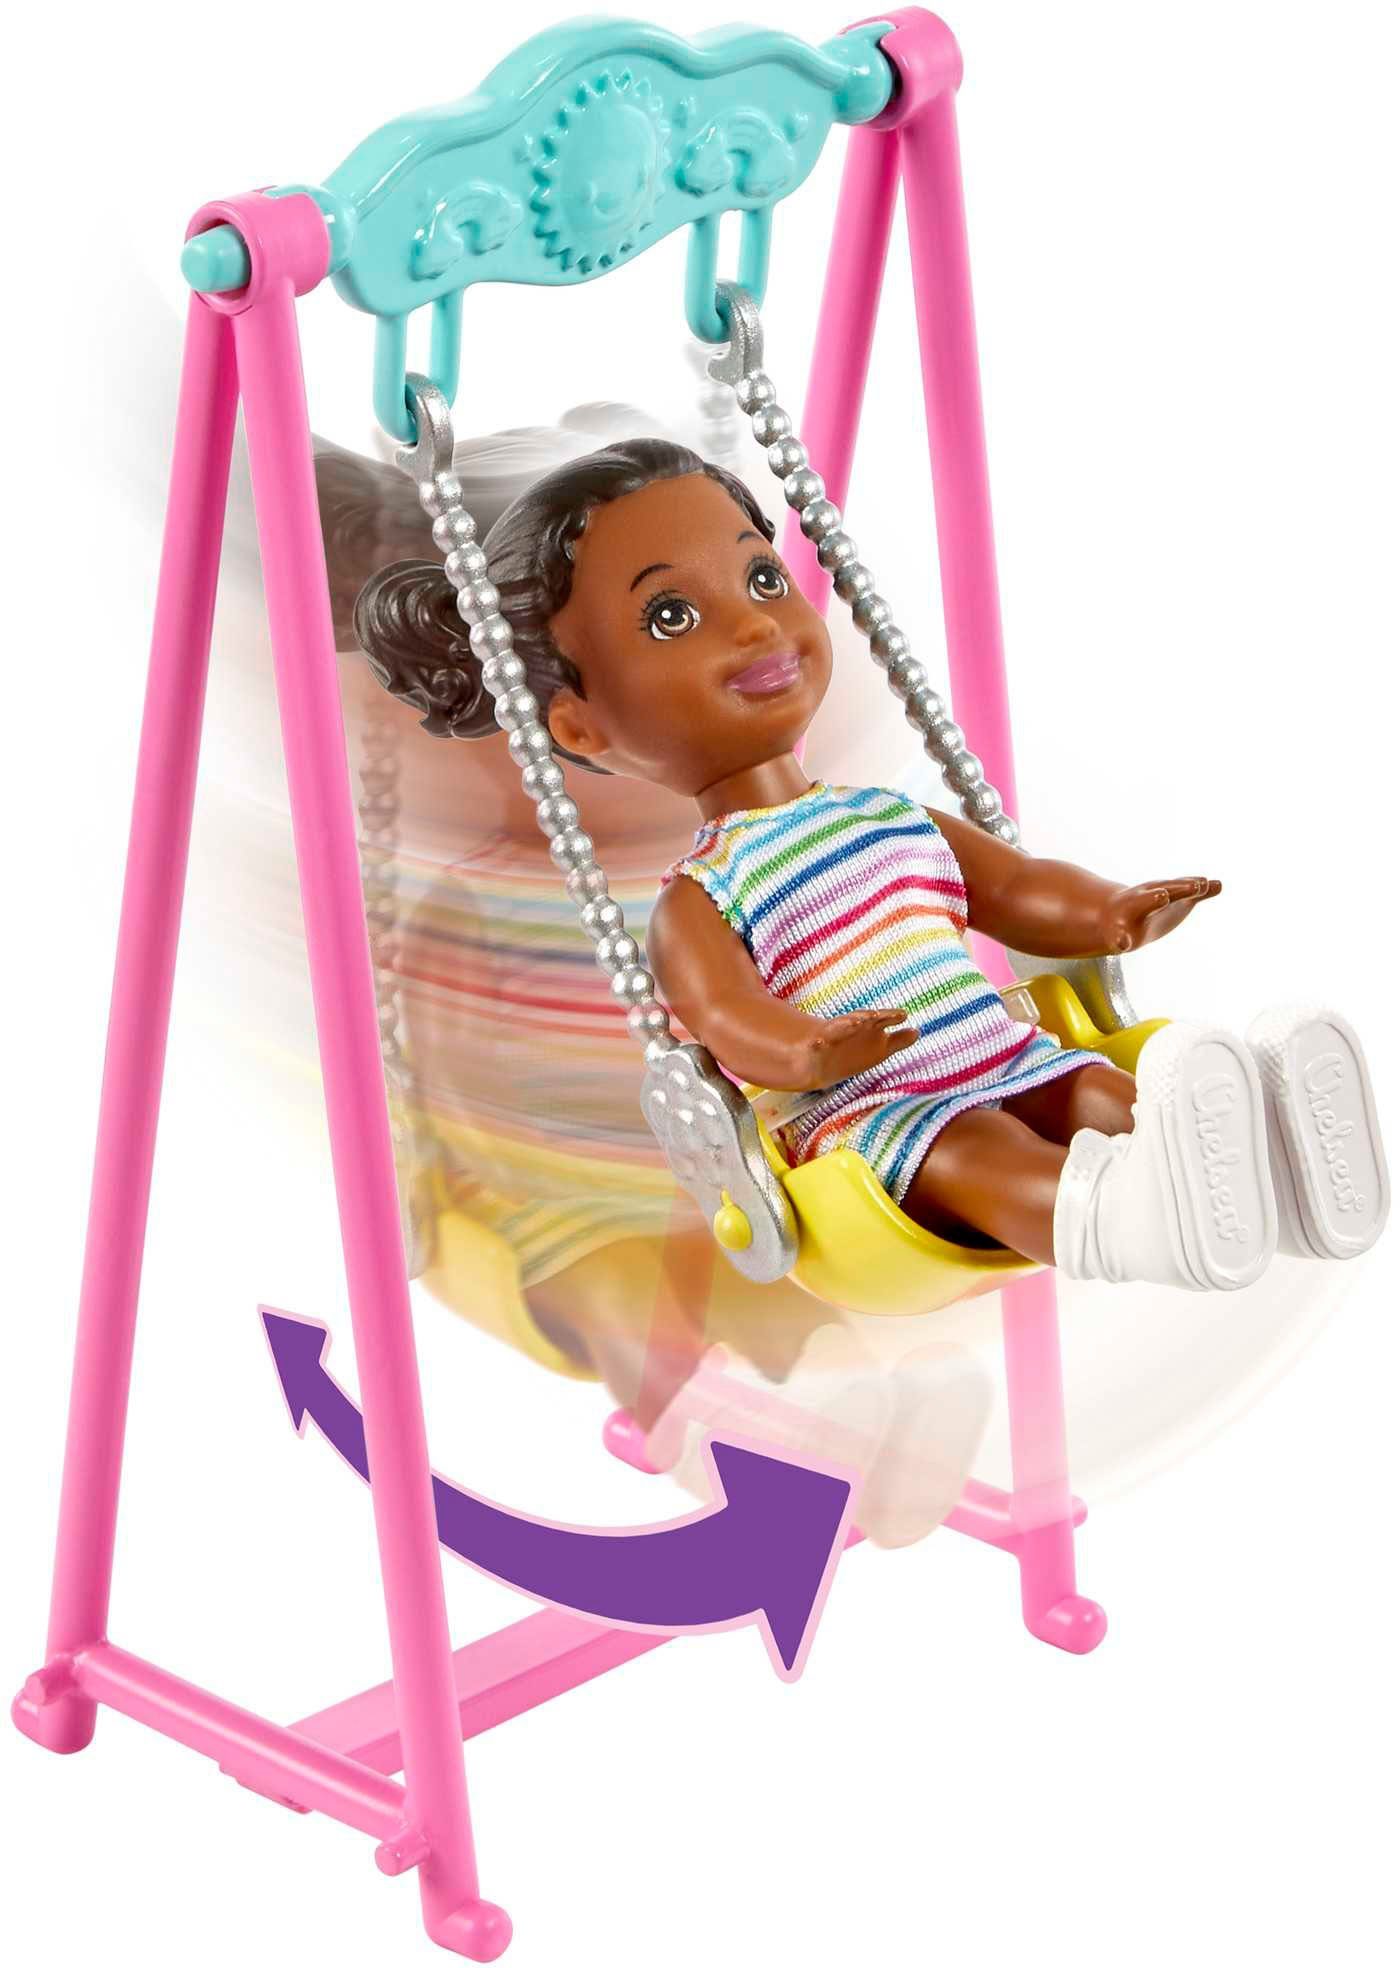 Barbie Anziehpuppe Hüpfburg-Spielset, Puppen Babysitters und Zubehör Skipper mit